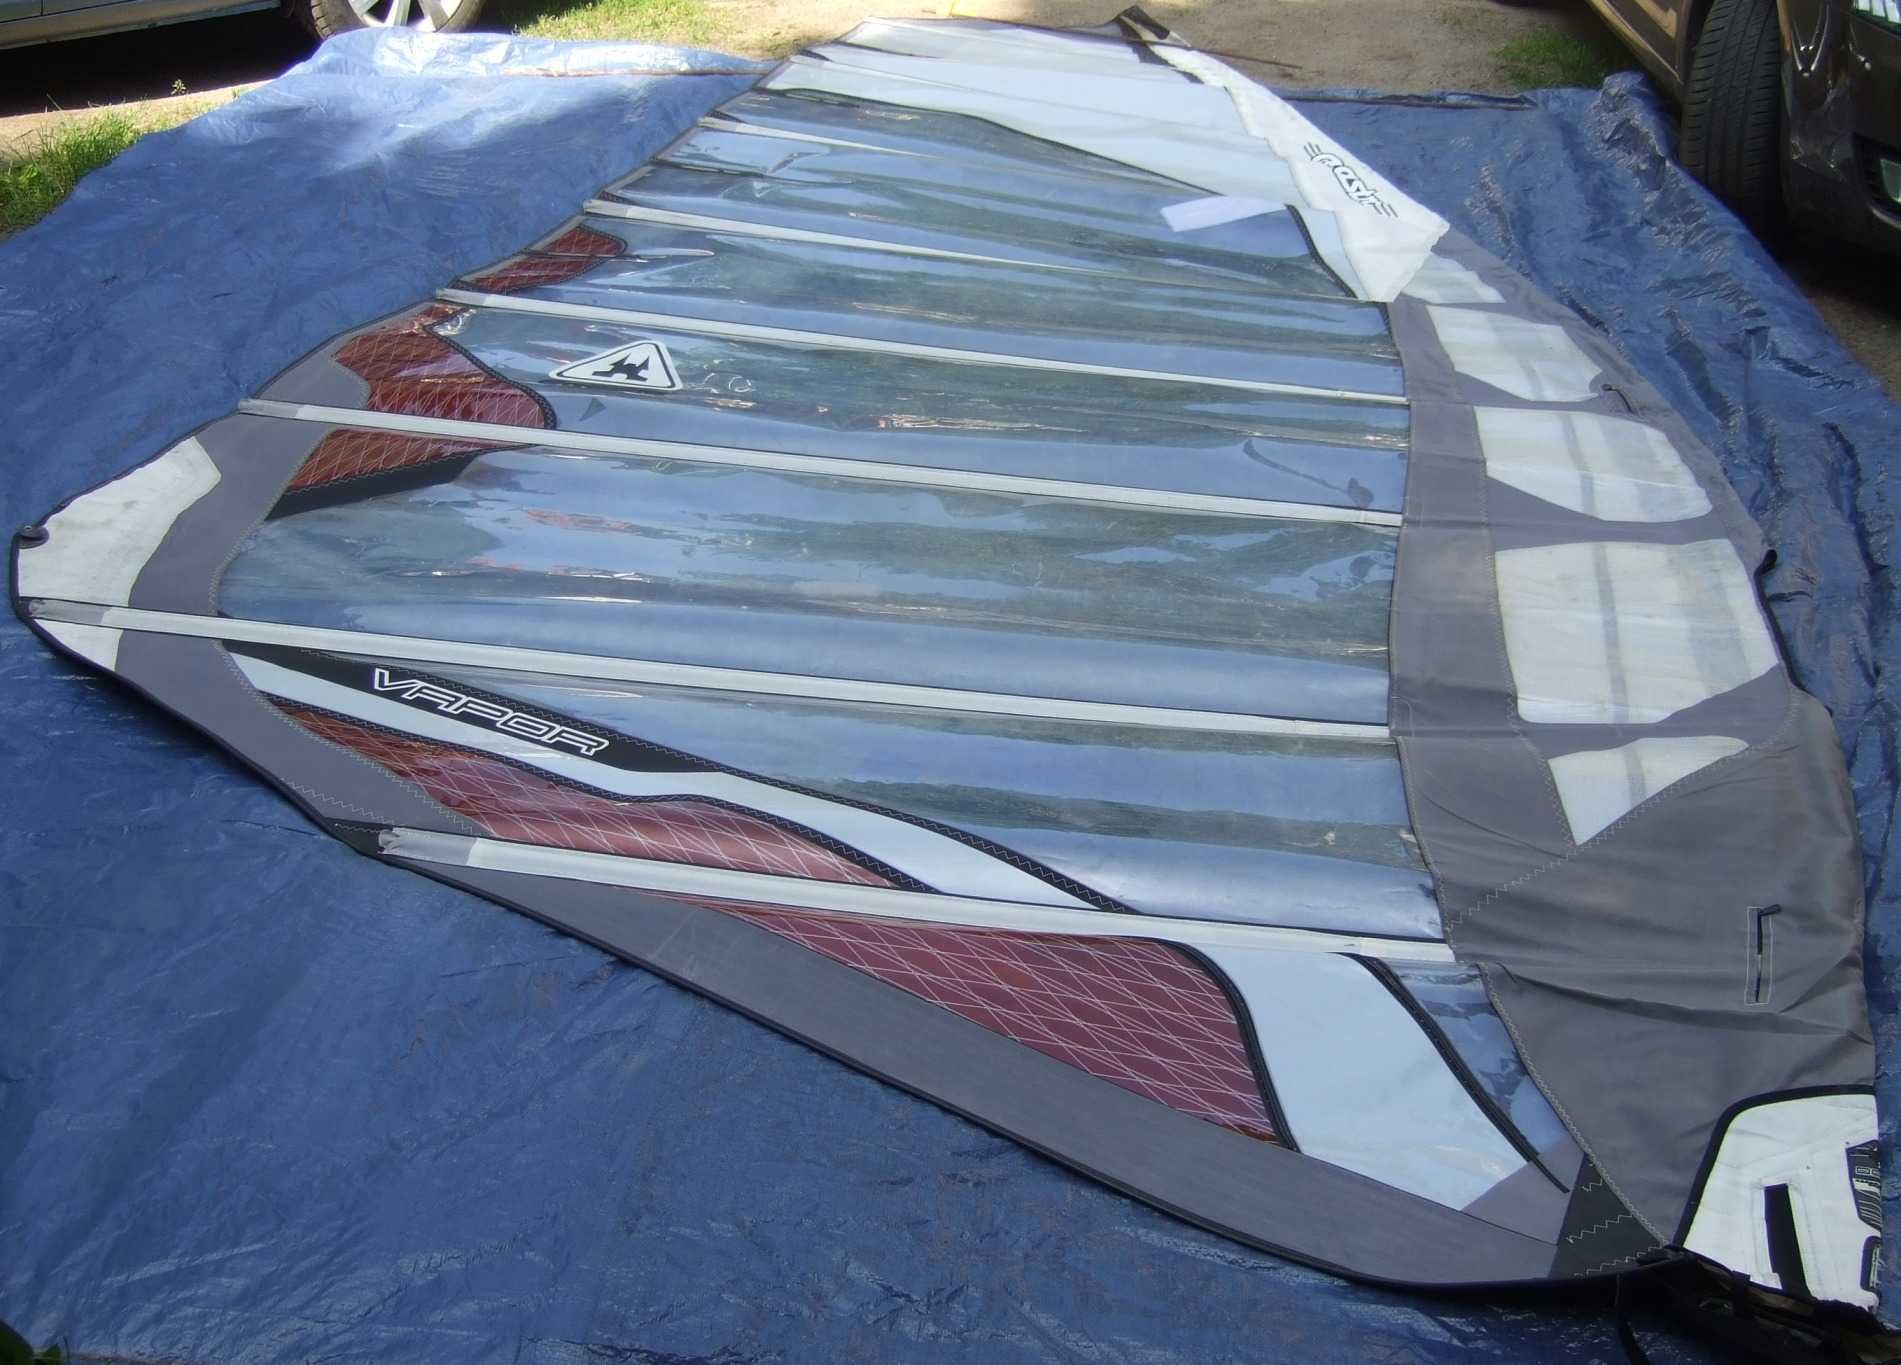 żagiel 6 - 10 m2 windsurfing